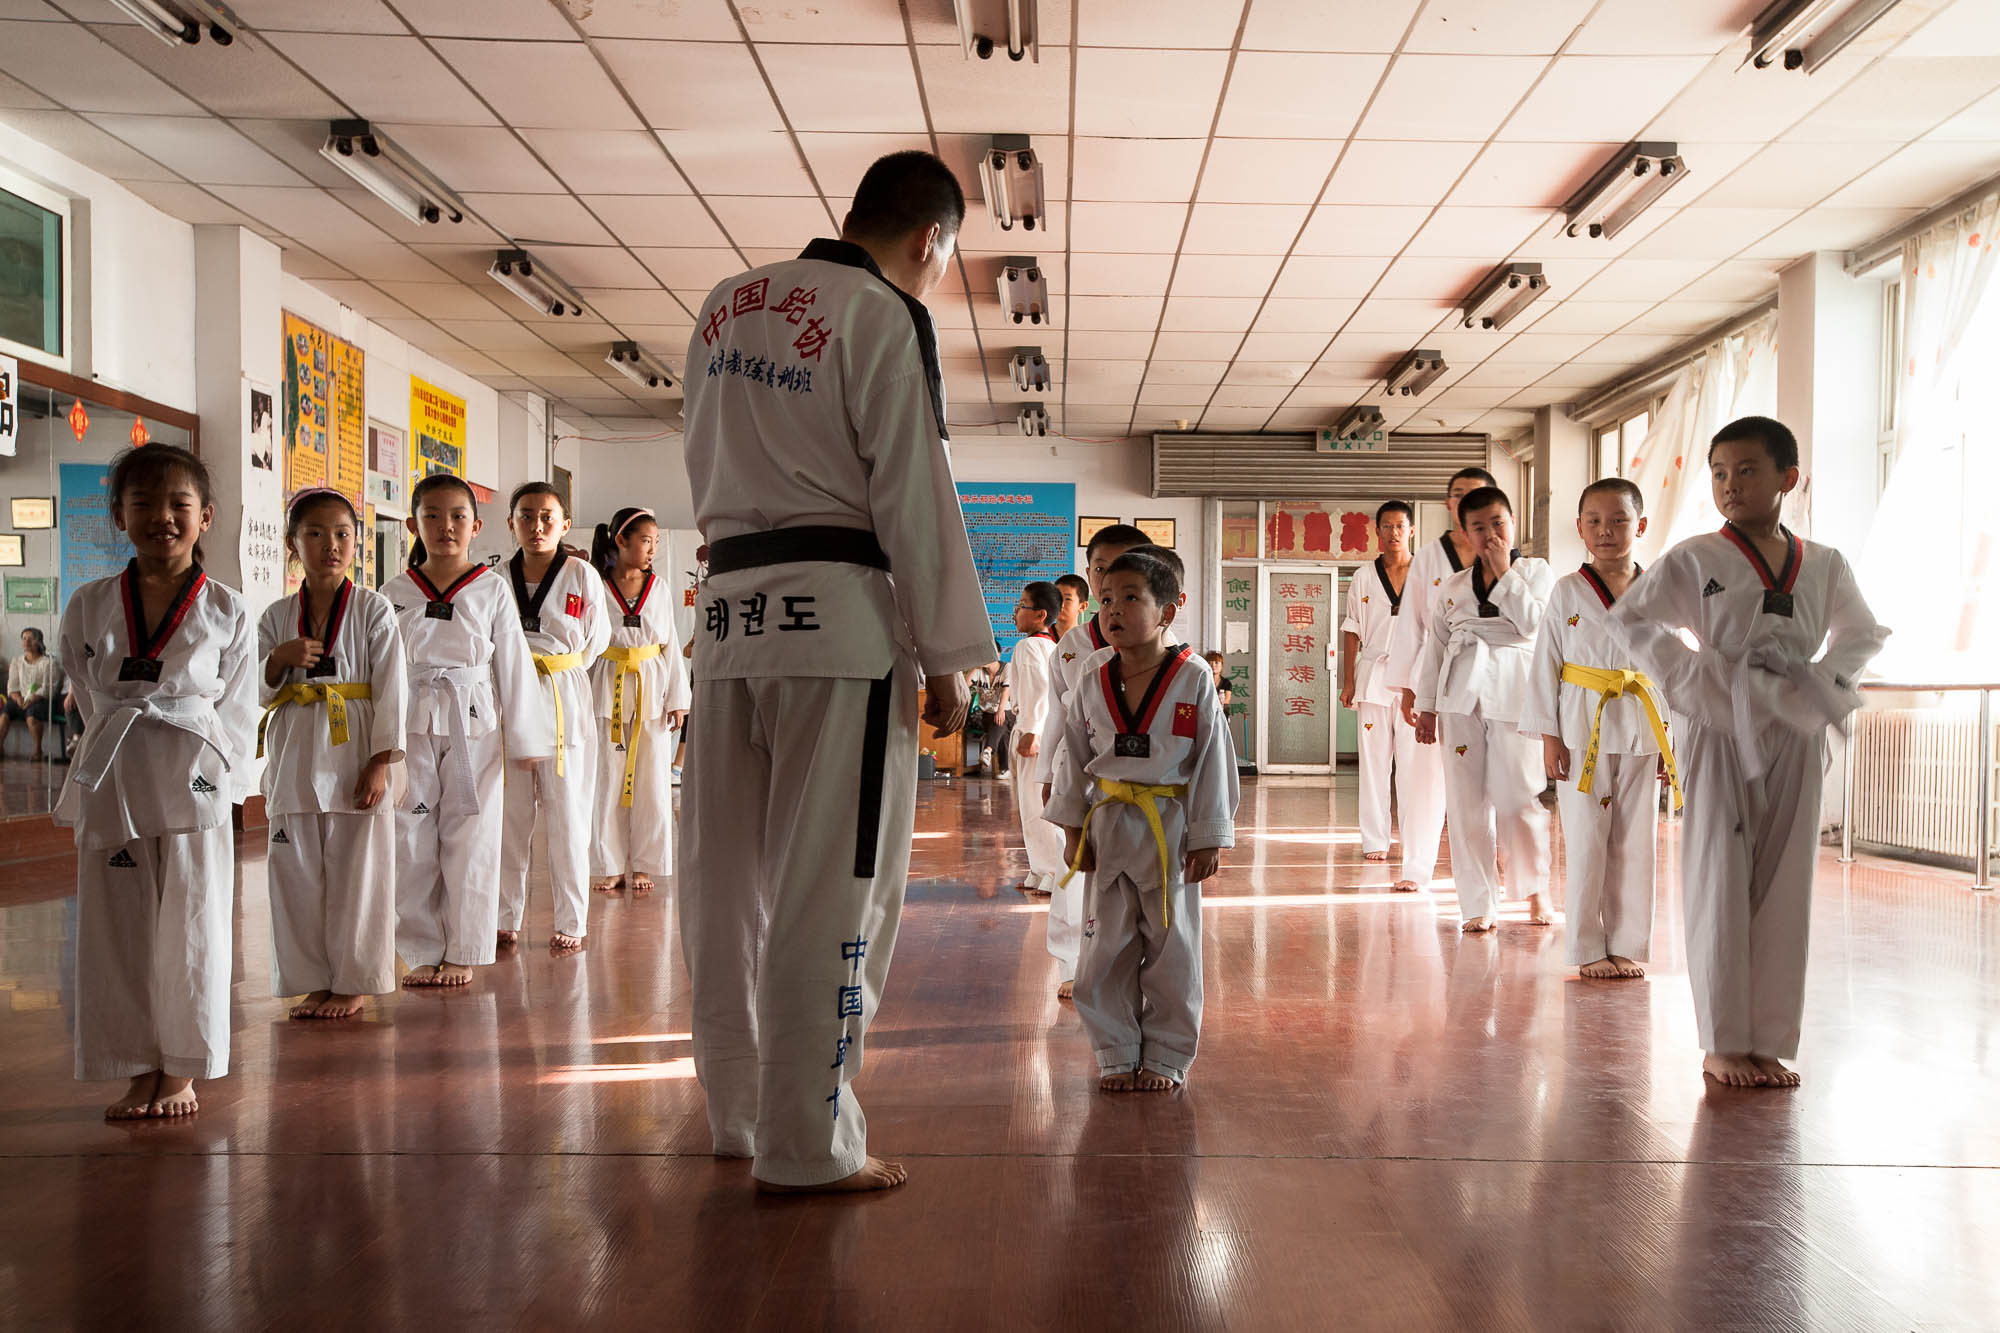 taekwondo students